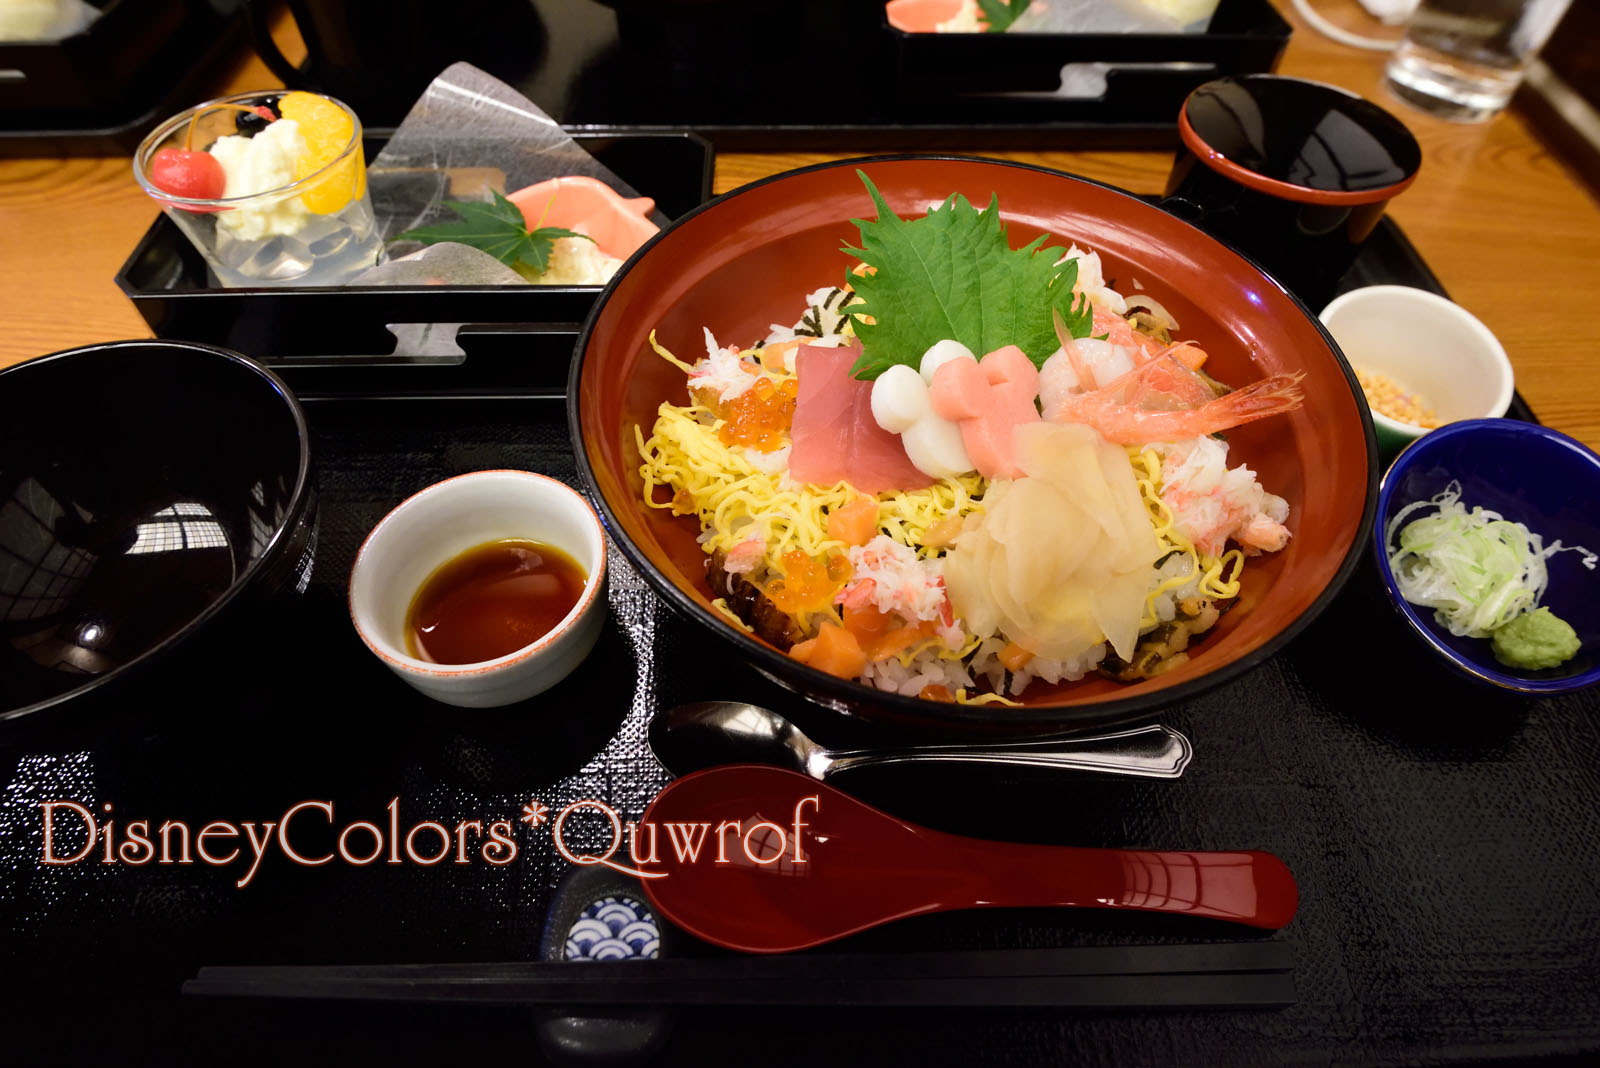 祭りちらし寿司はスーベニア箸付きで今年も超オススメ れすとらん北齋 03 Disney Colors Blog